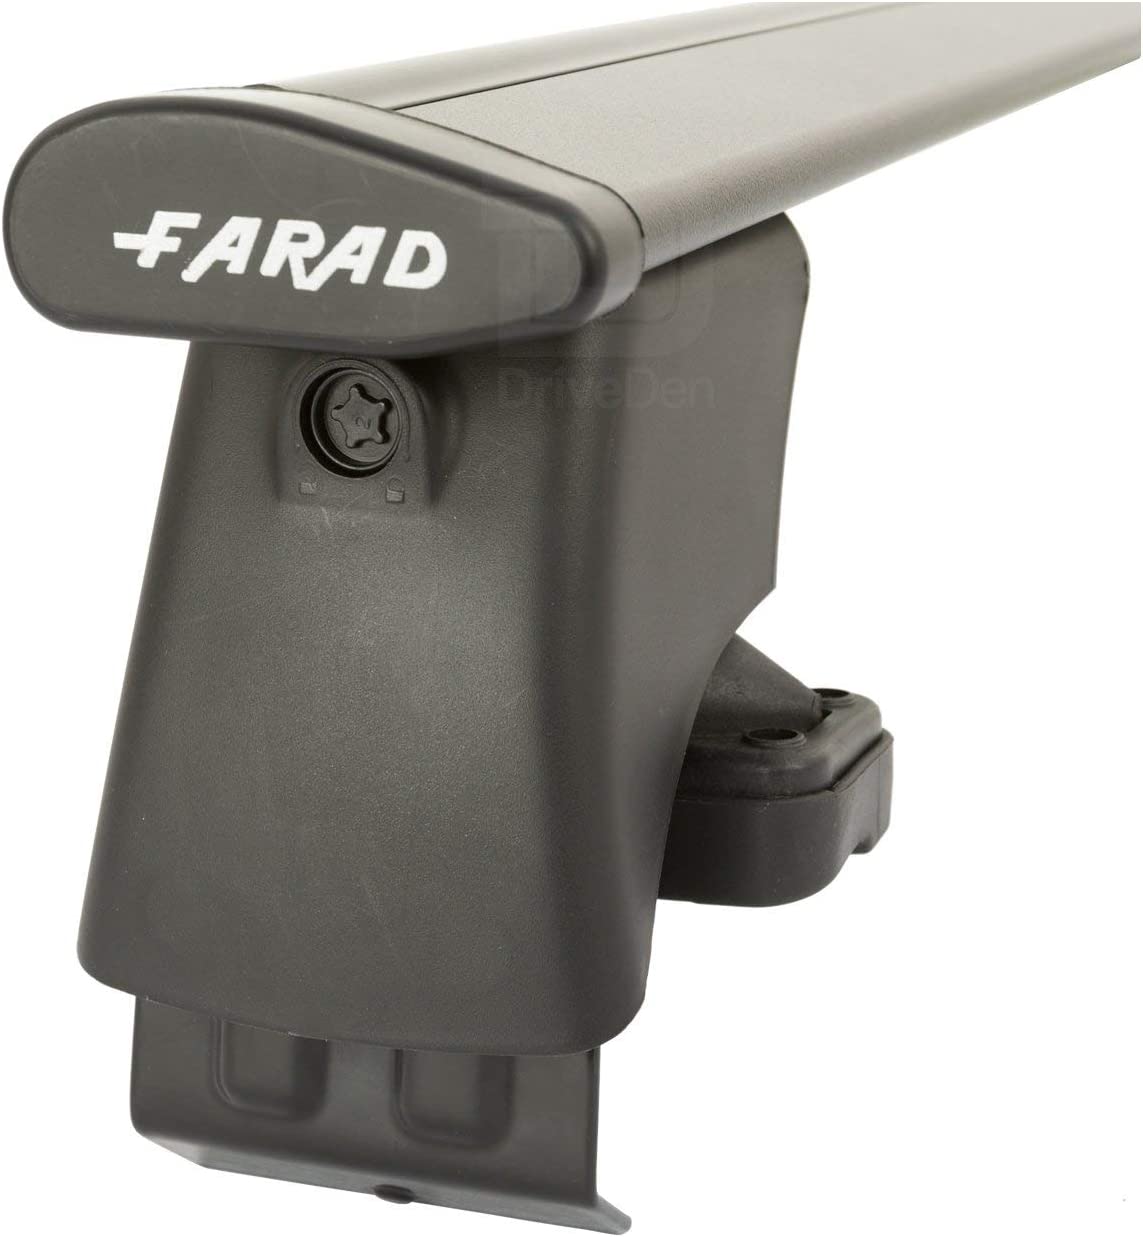 FARAD-Kit H2 per barre portatutto - Seat Cordoba 2003-2009 (senza corrimano)